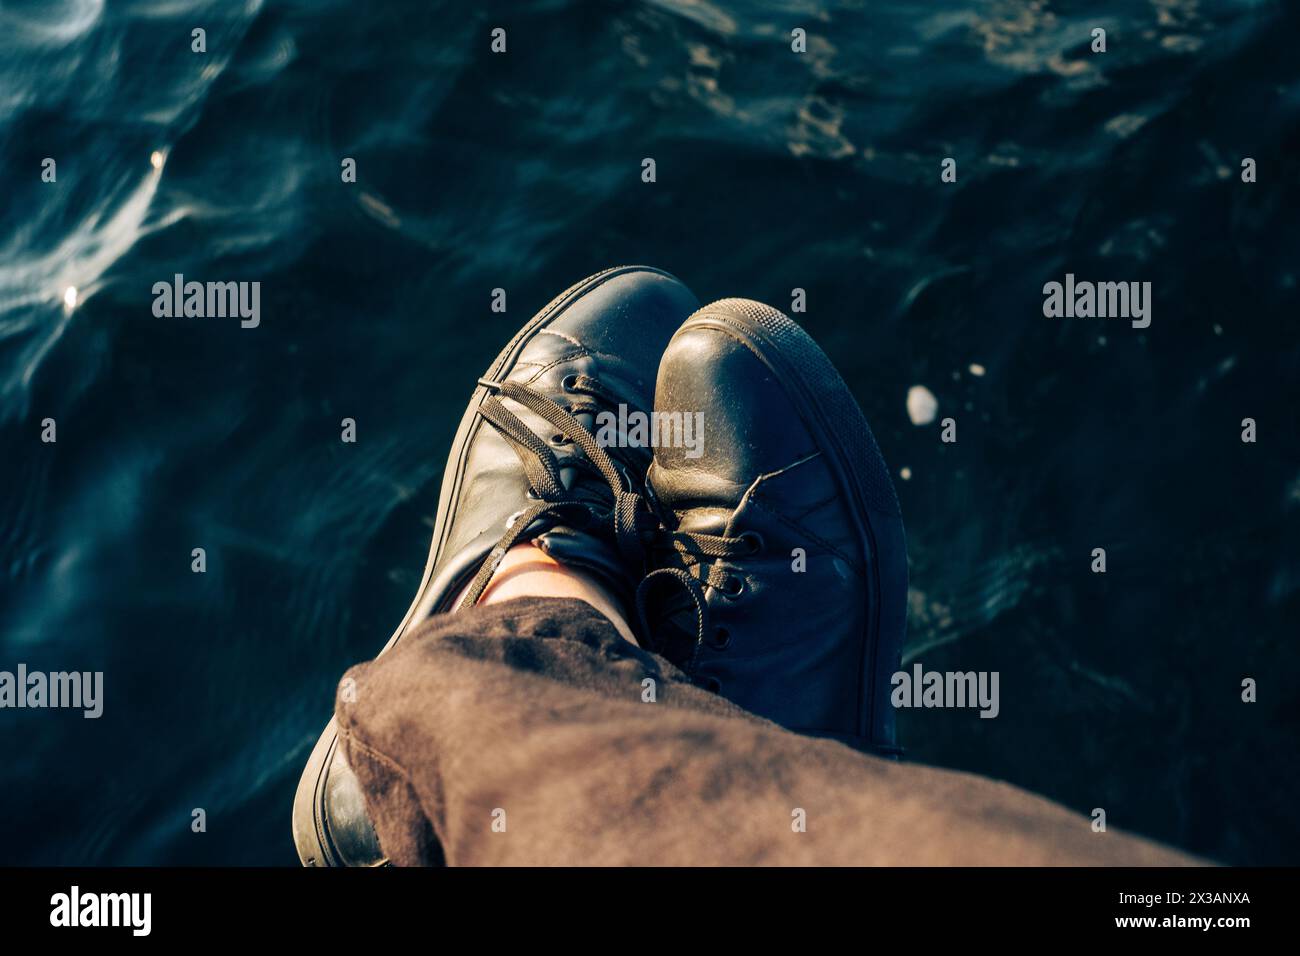 Persona con scarpe nere che penzolano i piedi sull'acqua, catturando un momento di calma e riflessione. Foto di alta qualità Foto Stock